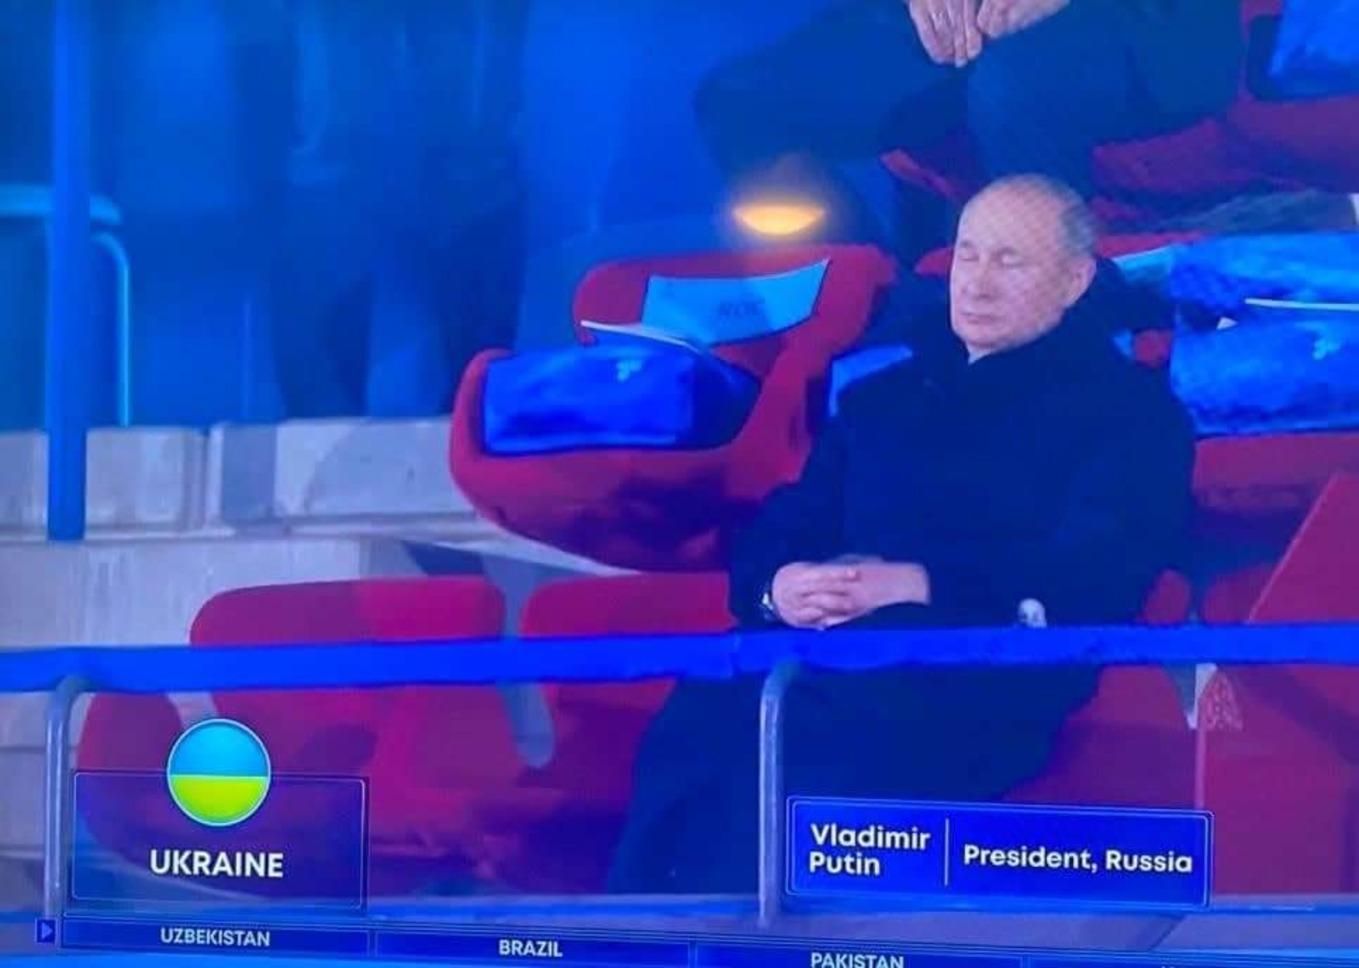 "Просто вдам, що їх не існує": як мережа реагує на сплячого Путіна під час виходу українців - Спорт 24